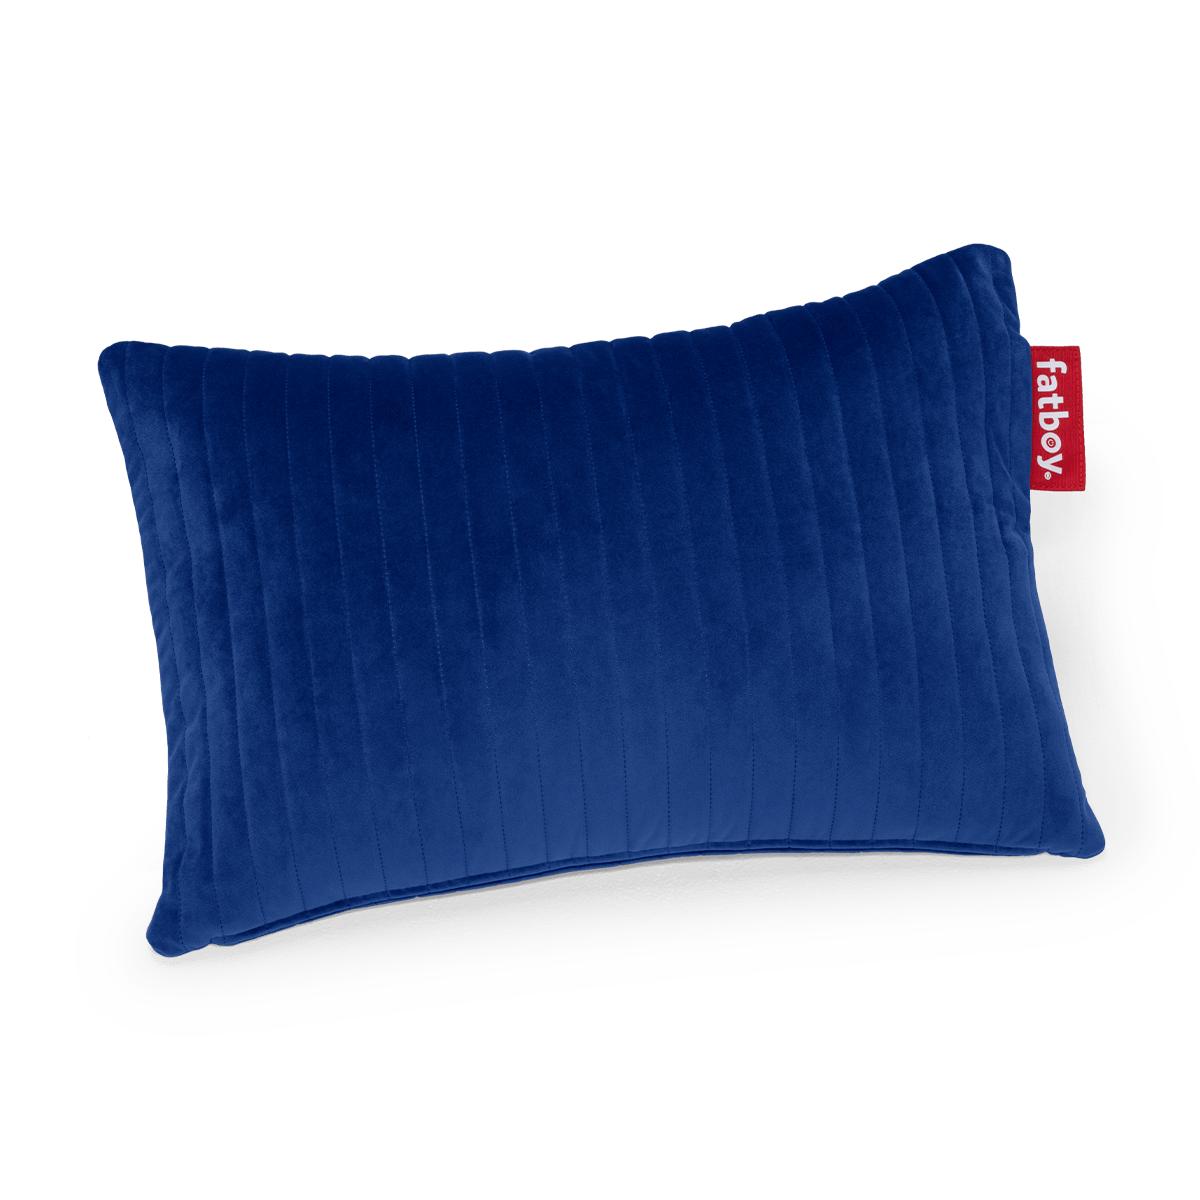 Hotspot Pillow Line Velvet, cuscino termico super morbido